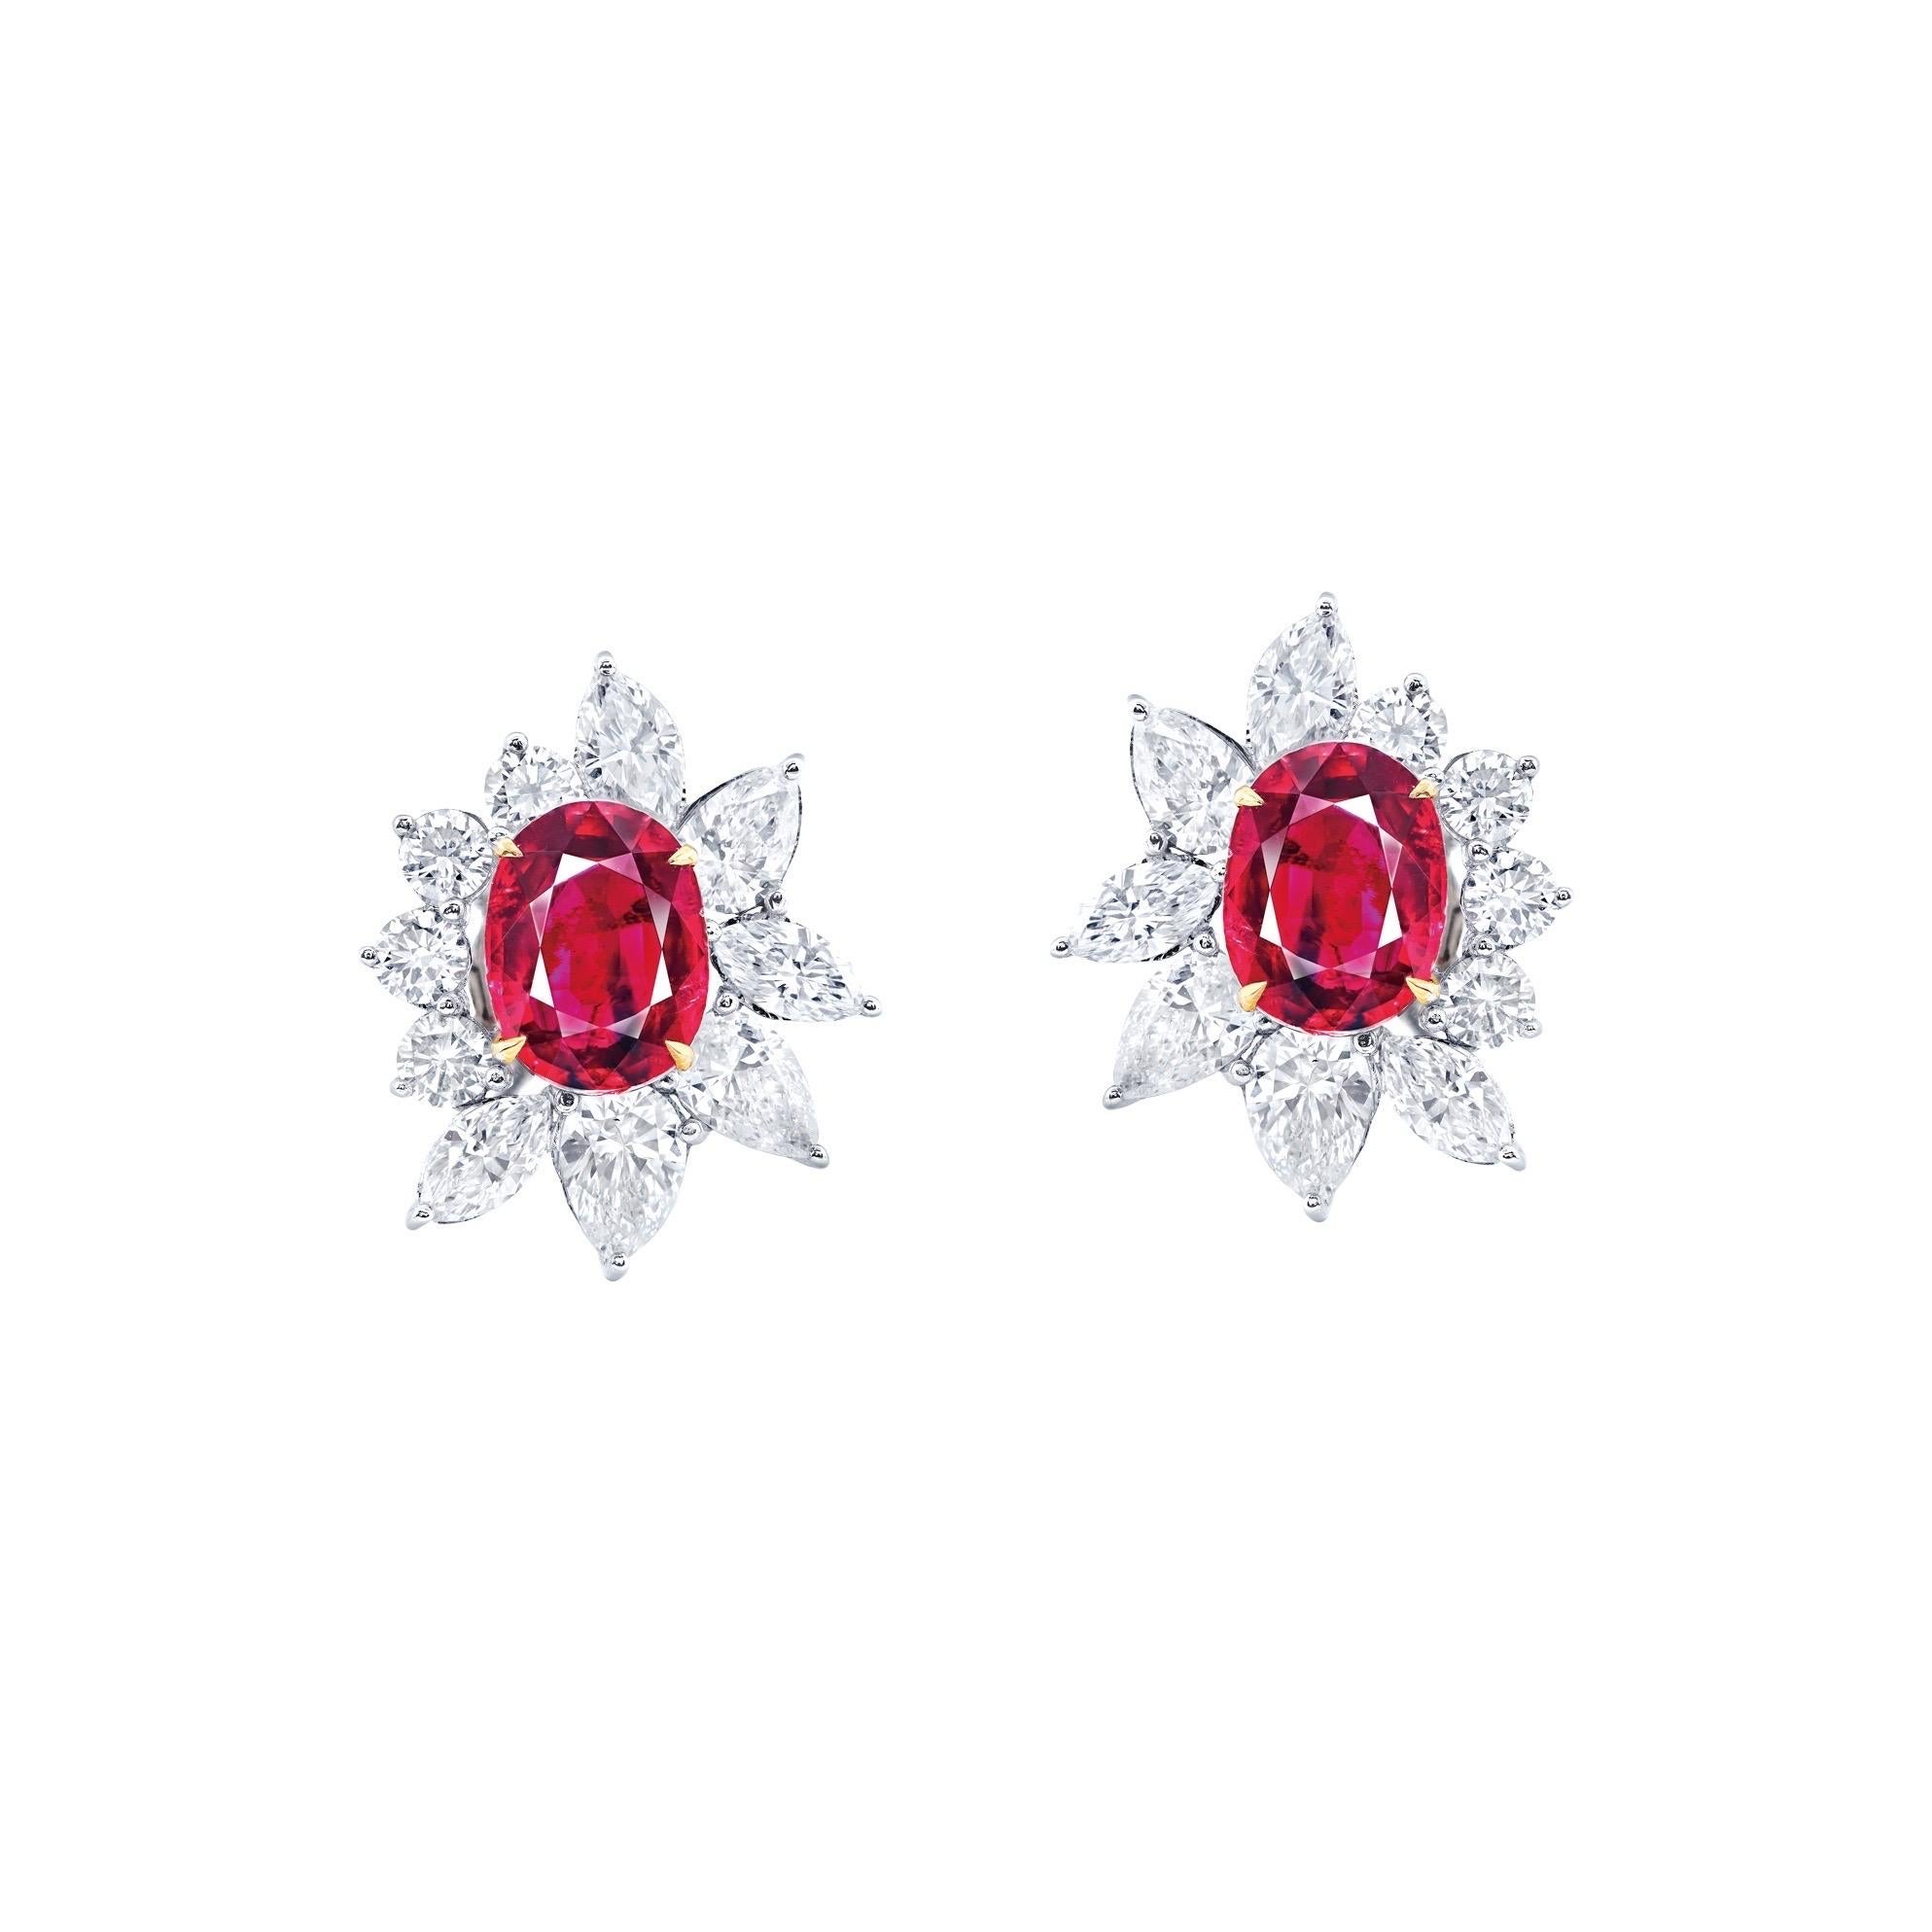 Oval Cut Emilio Jewelry Certified Burma No Heat Ruby Earrings For Sale